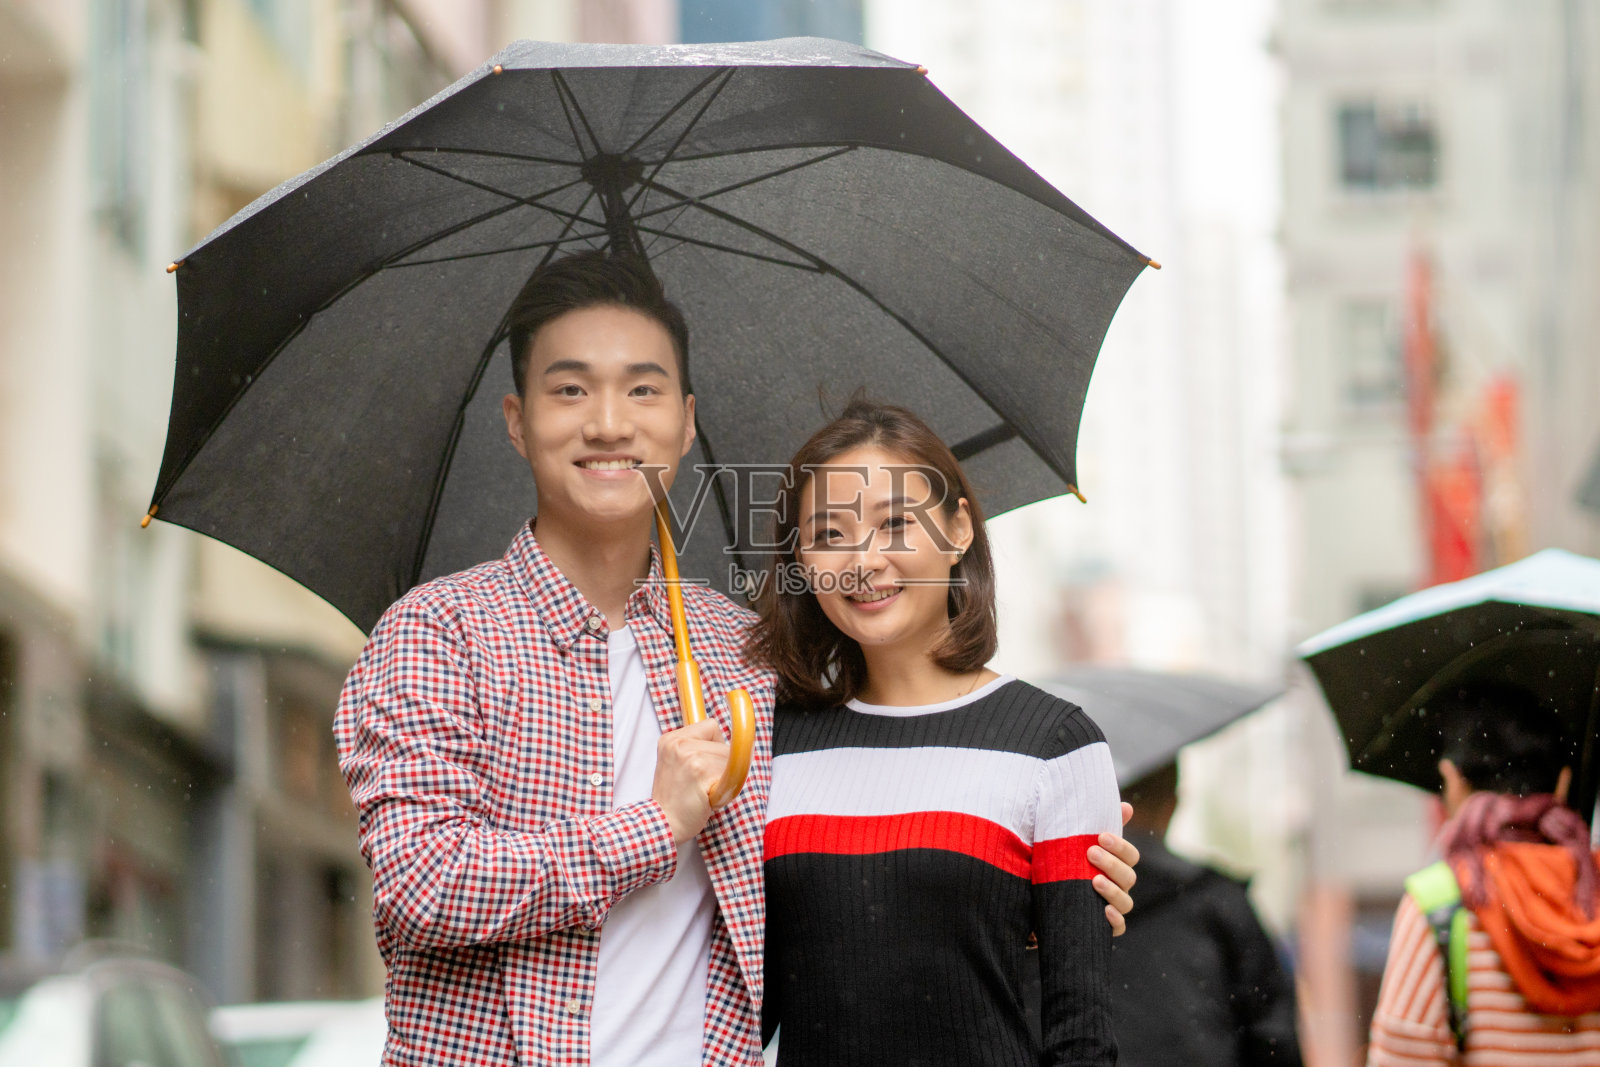 这是一对年轻夫妇在雨中浪漫散步的照片照片摄影图片